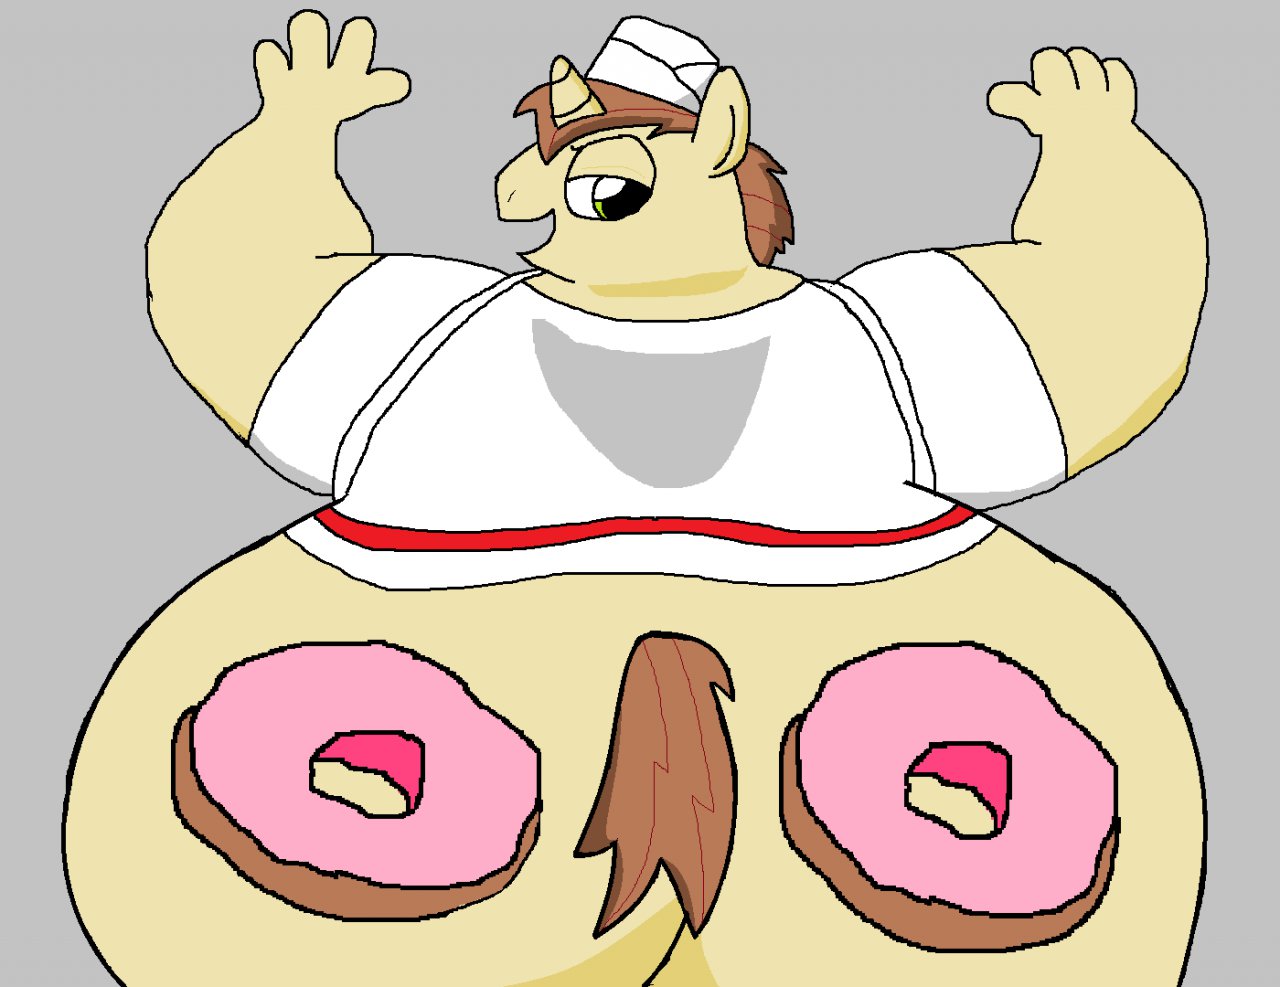 Donut Butt